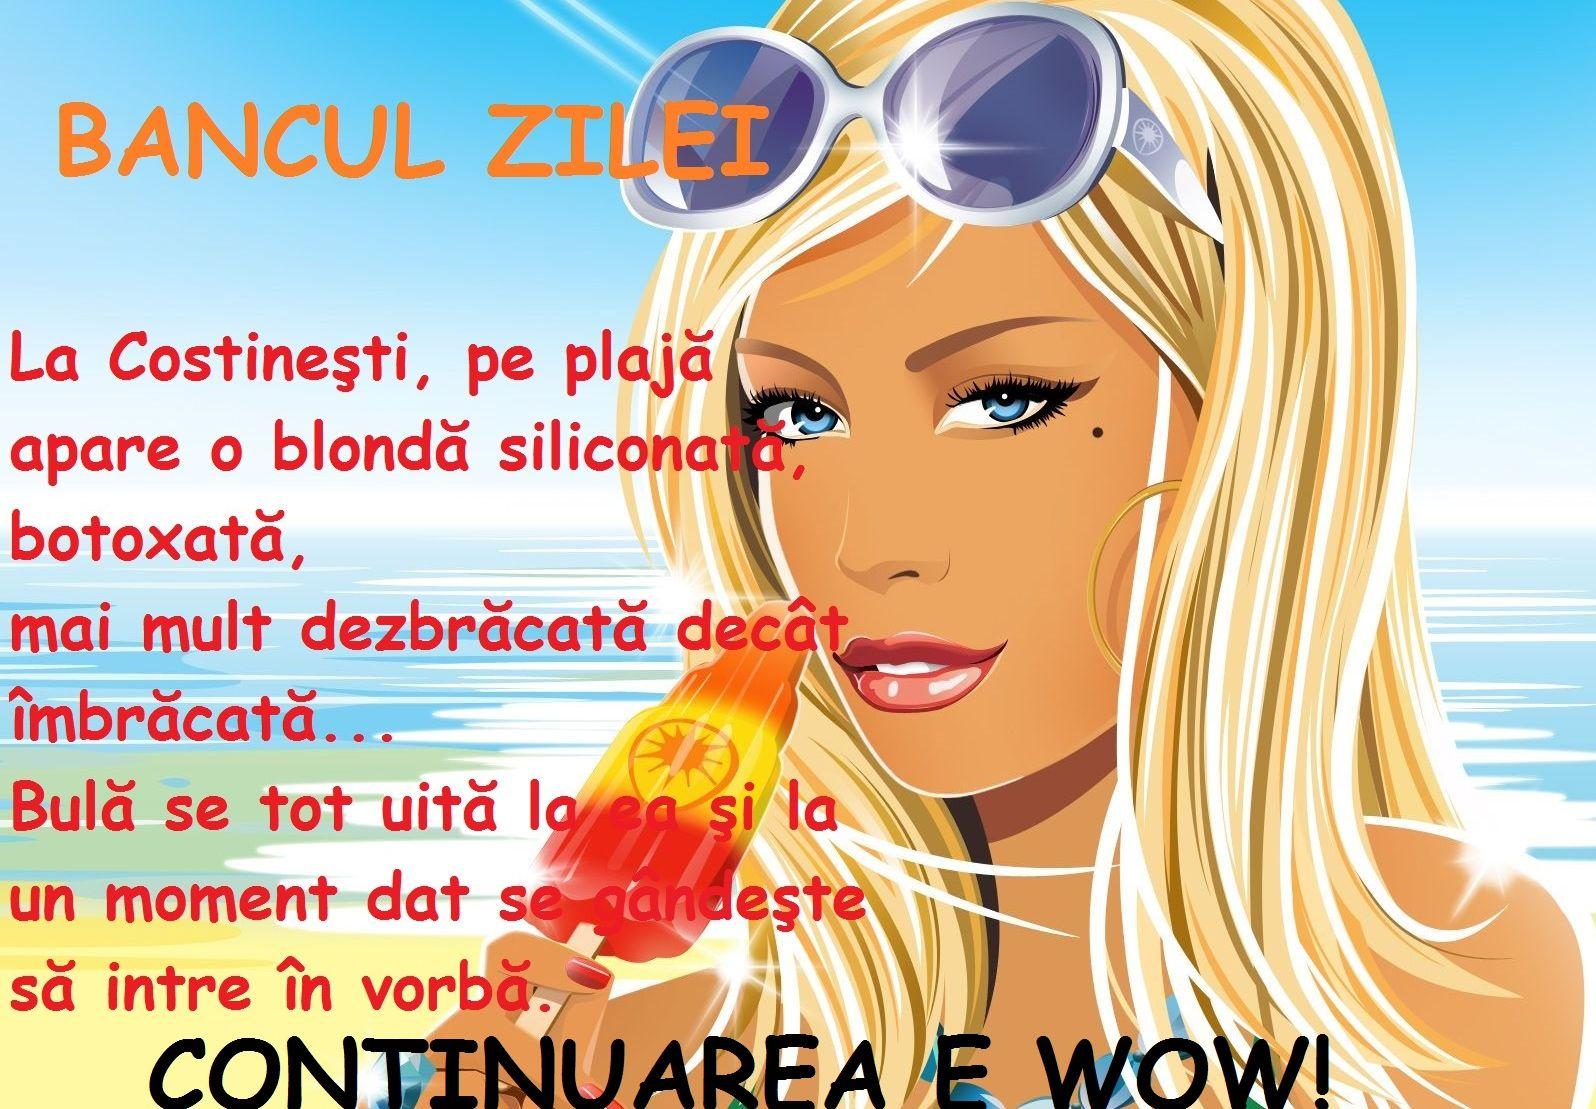 BANCUL ZILEI: La Costineşti, pe plajă apare o blondă siliconată, botoxată și Bulă...